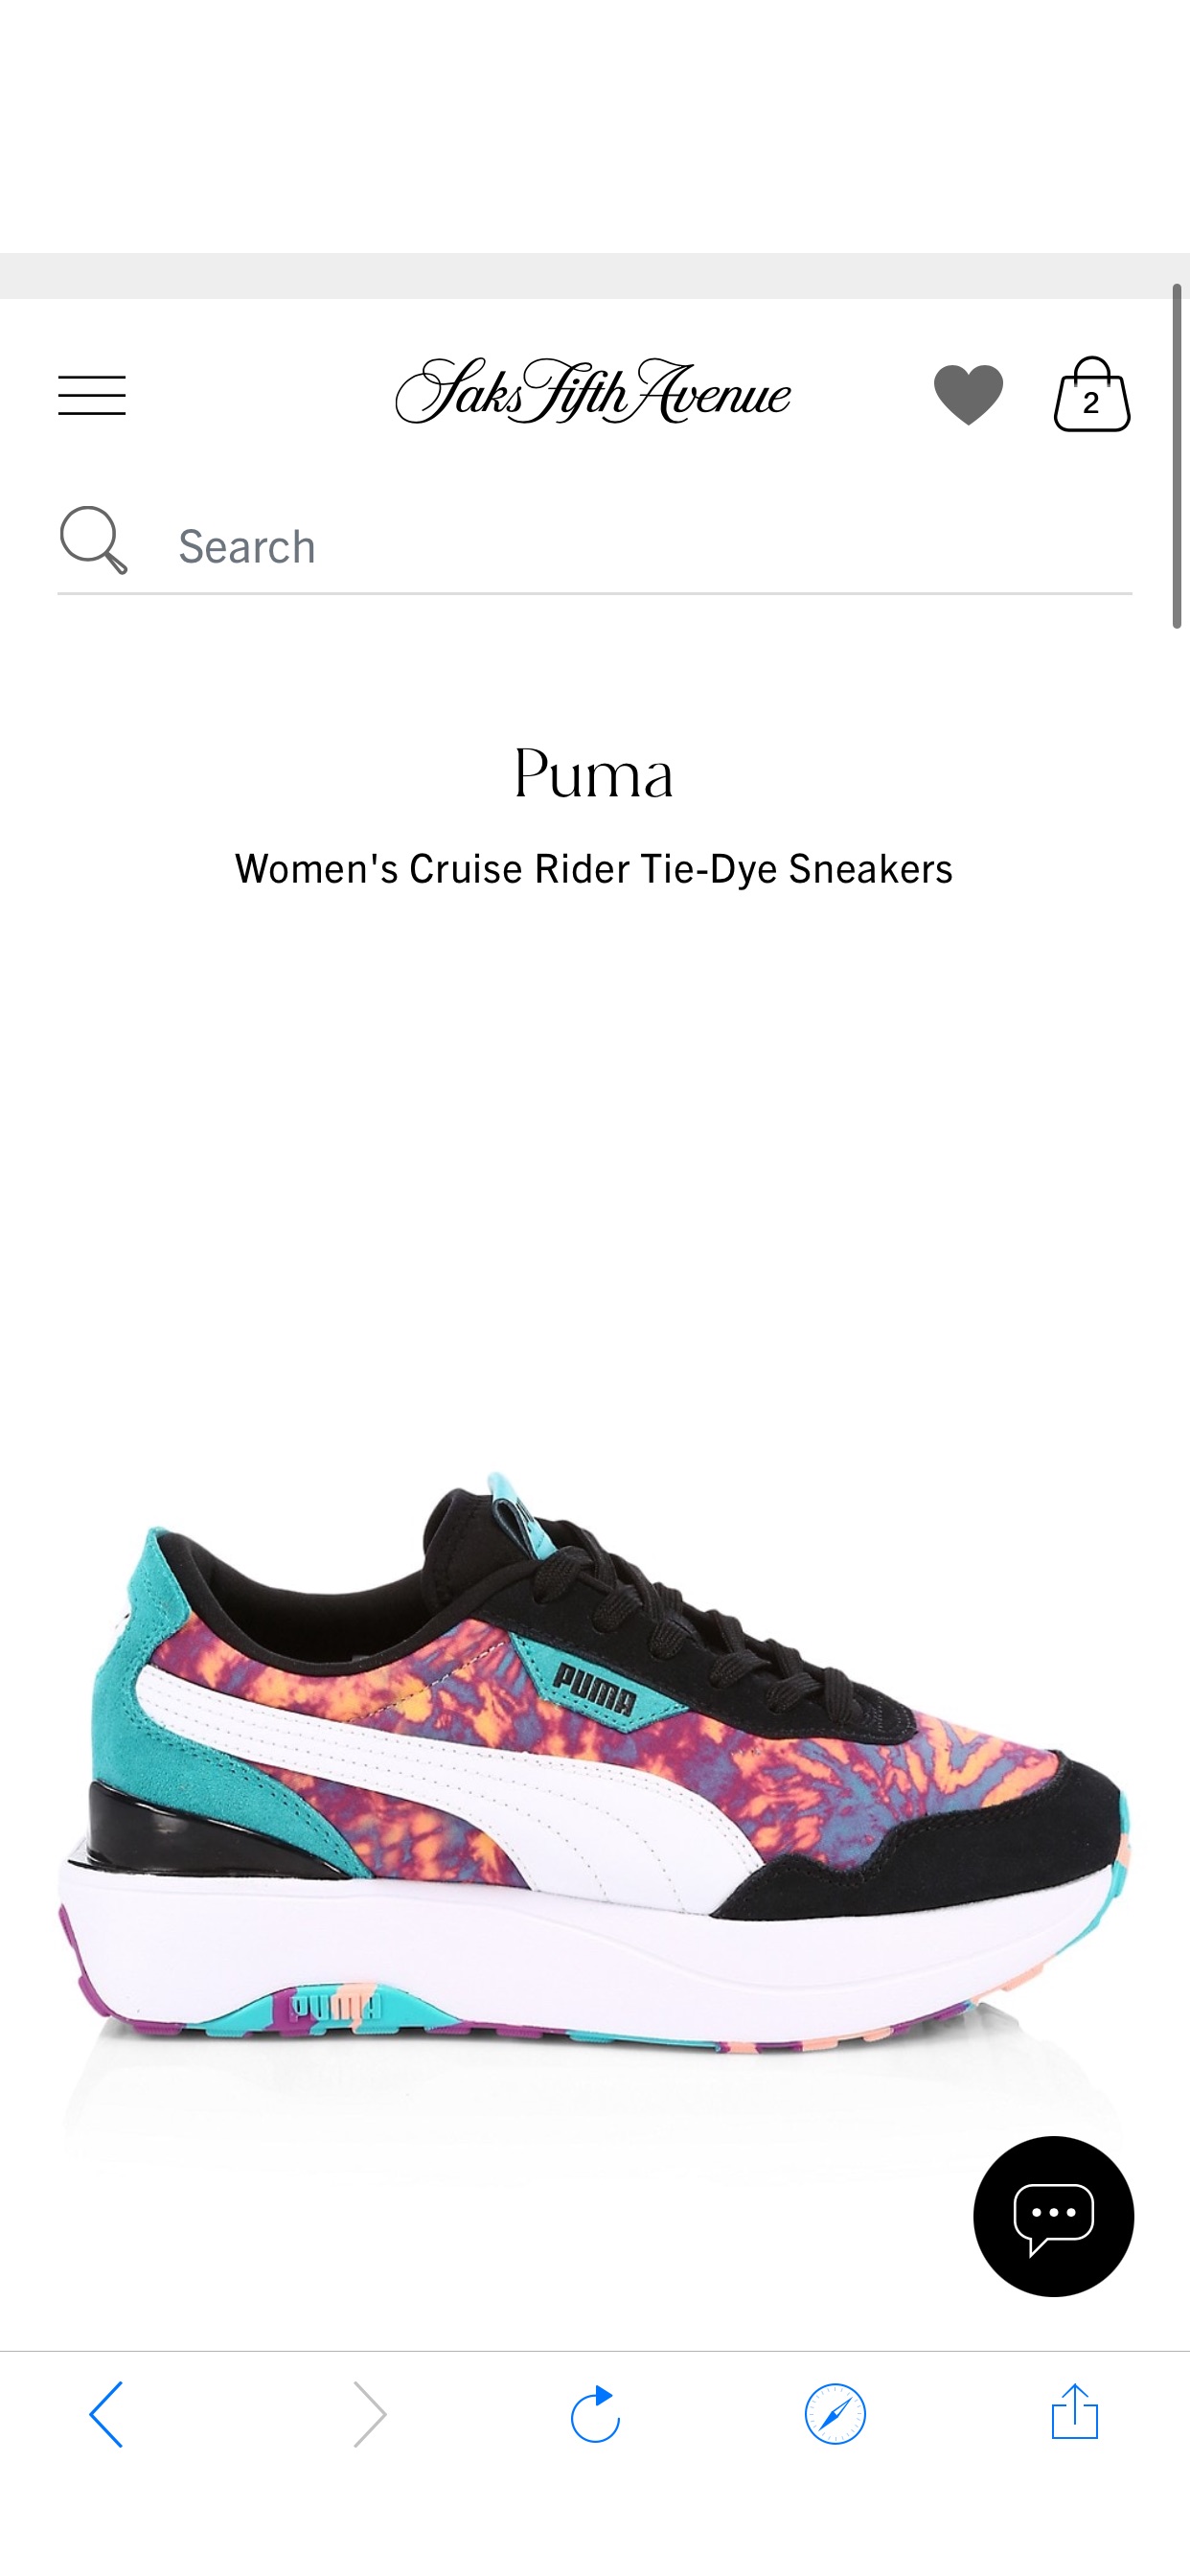 Shop Puma Women's Cruise Rider Tie-Dye Sneakers | Saks Fifth Avenue
鞋子